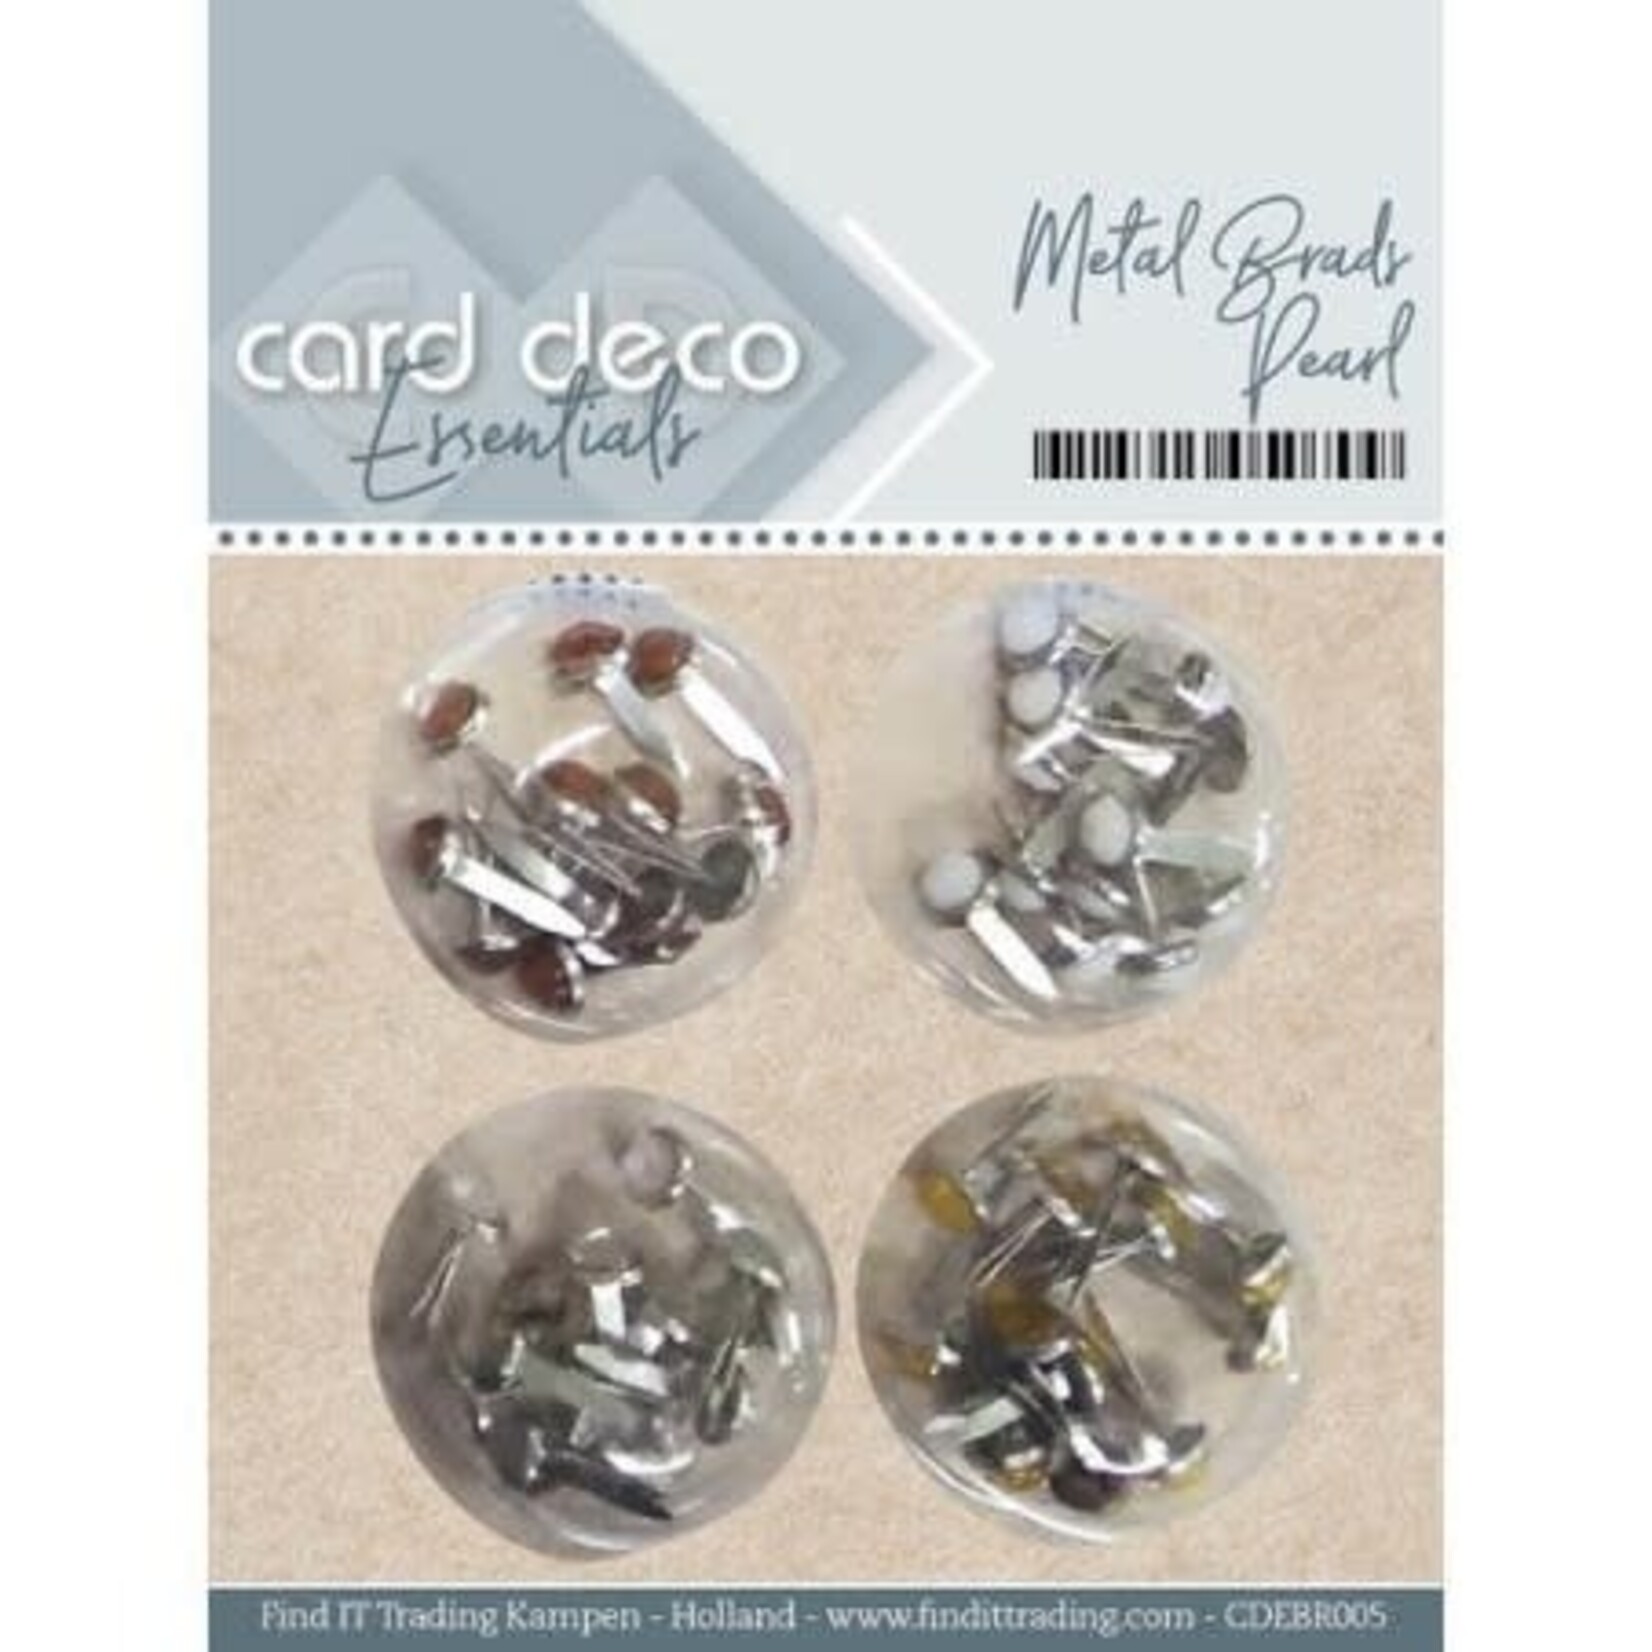 Card deco Card Deco Essentials Rhinestones Copper, White, Silver, Gold